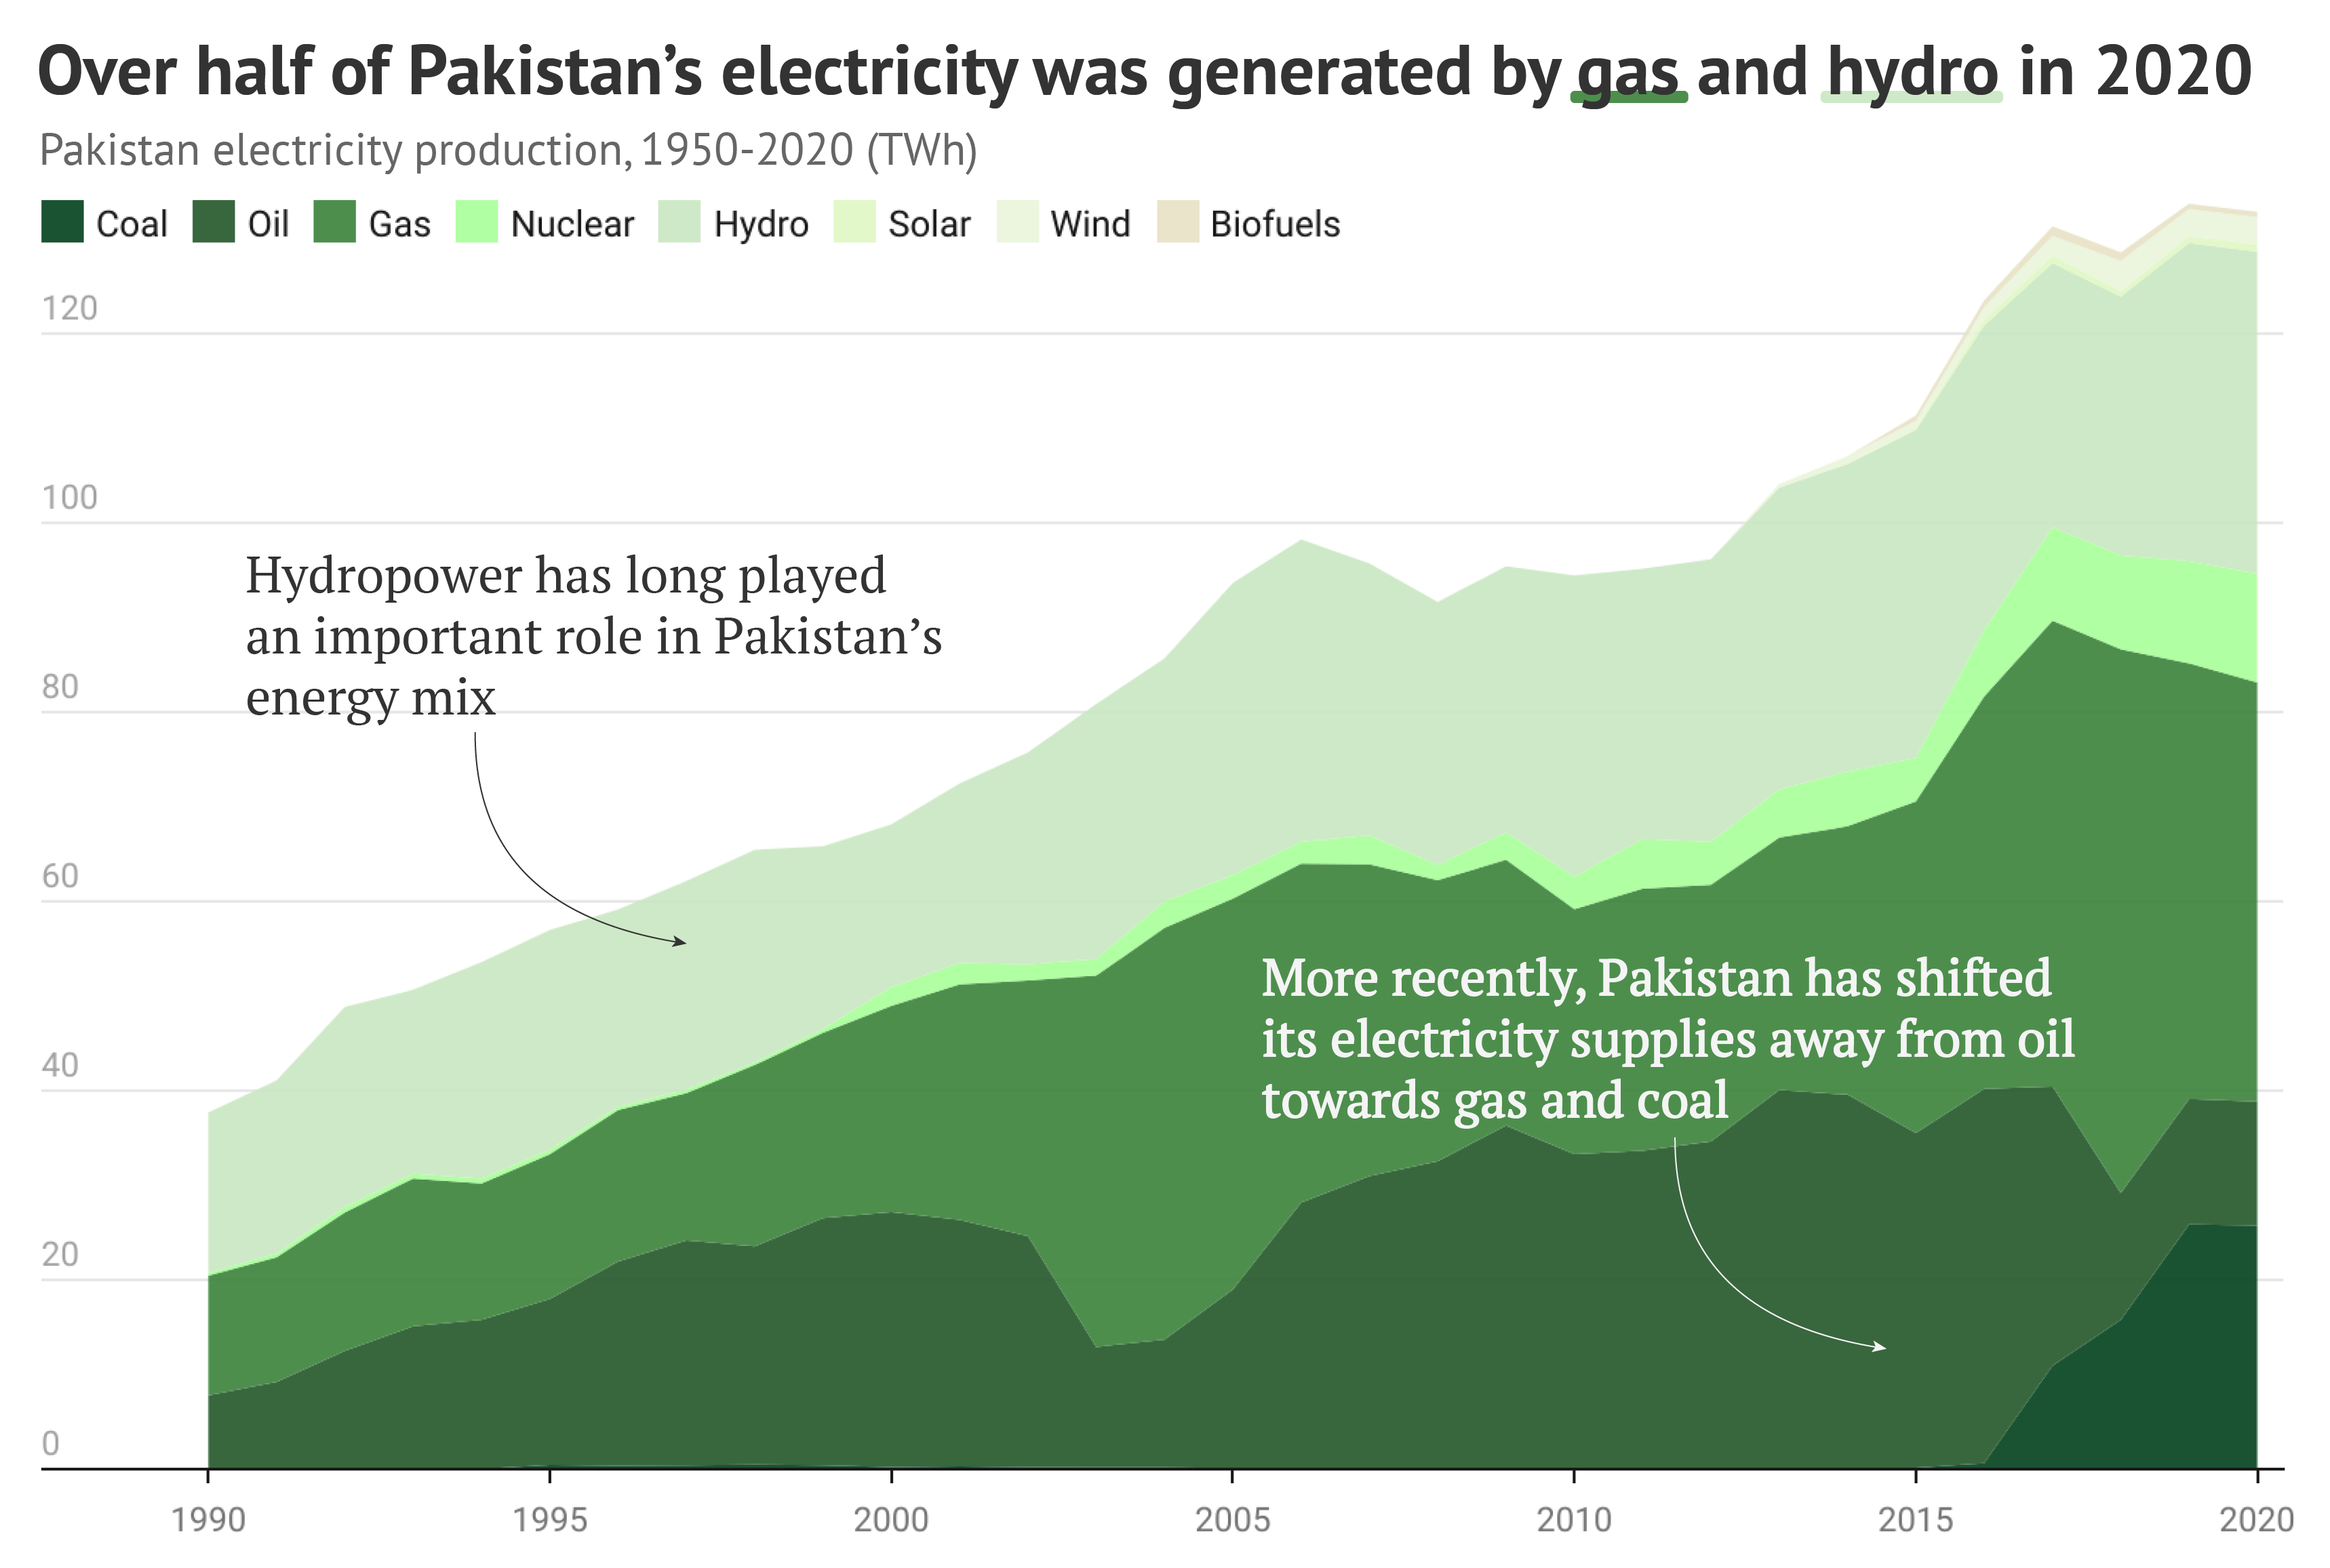 Die Grafik zeigt, dass im Jahr 2020 über die Hälfte des pakistanischen Stroms durch Gas und Wasserkraft erzeugt wurde.